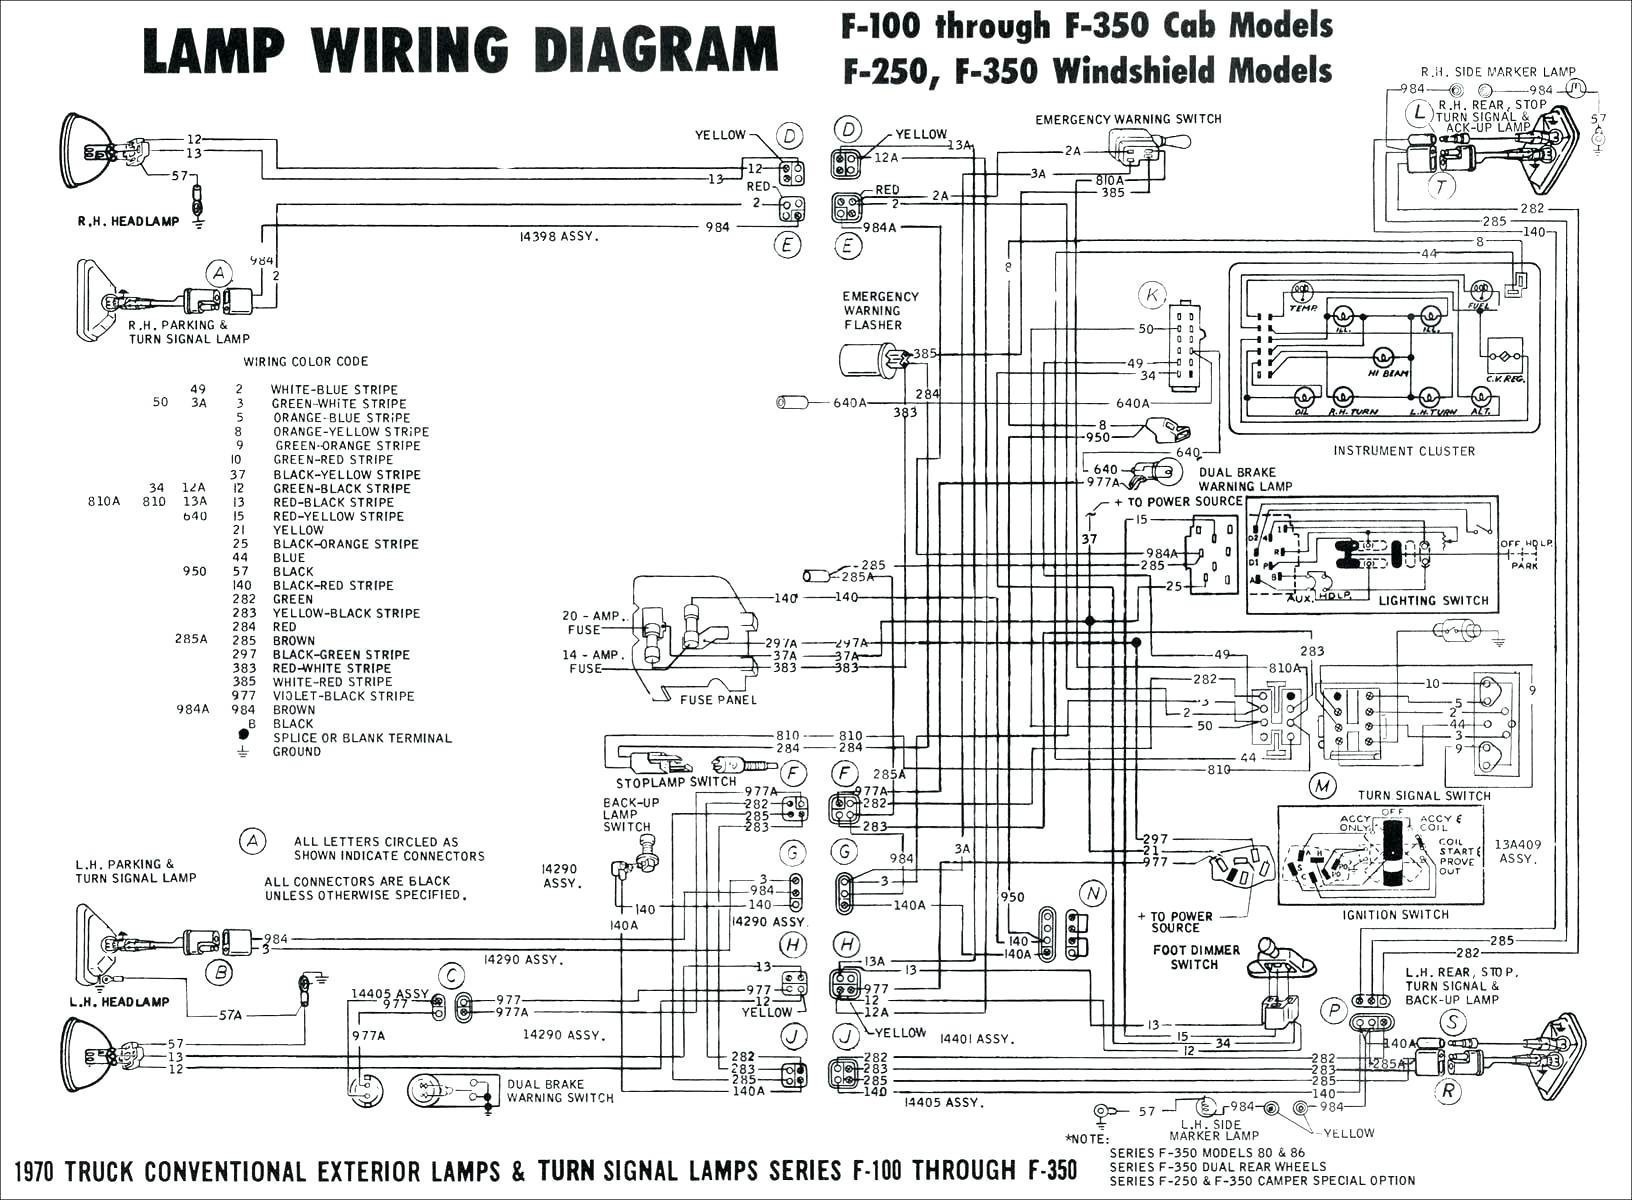 1988 mazda rx7 wiring diagram new 1985 mazda rx 7 fuse diagram